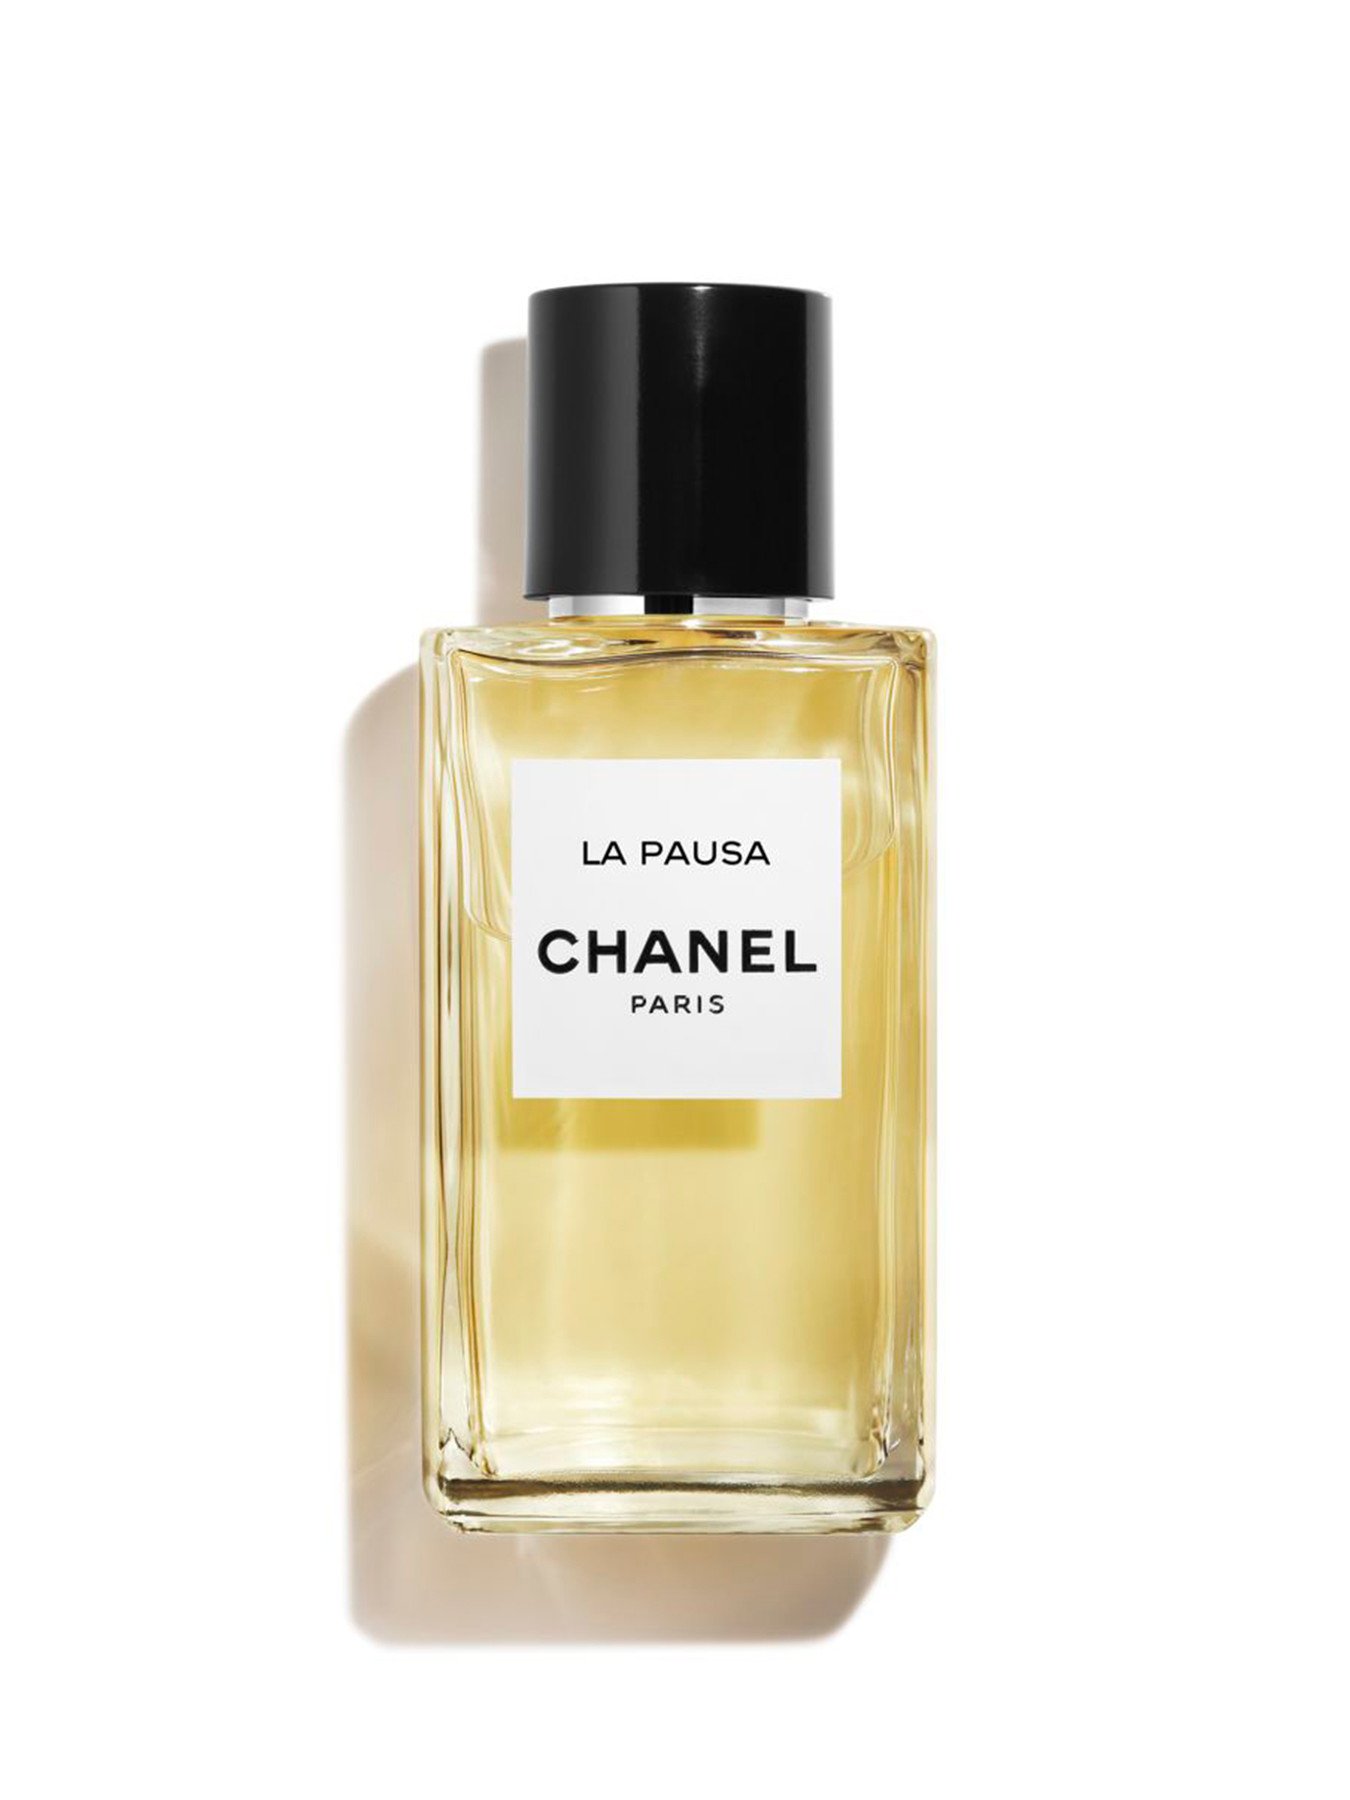 CHANEL Les Exclusifs 28 La Pausa Eau de Parfum 200ml